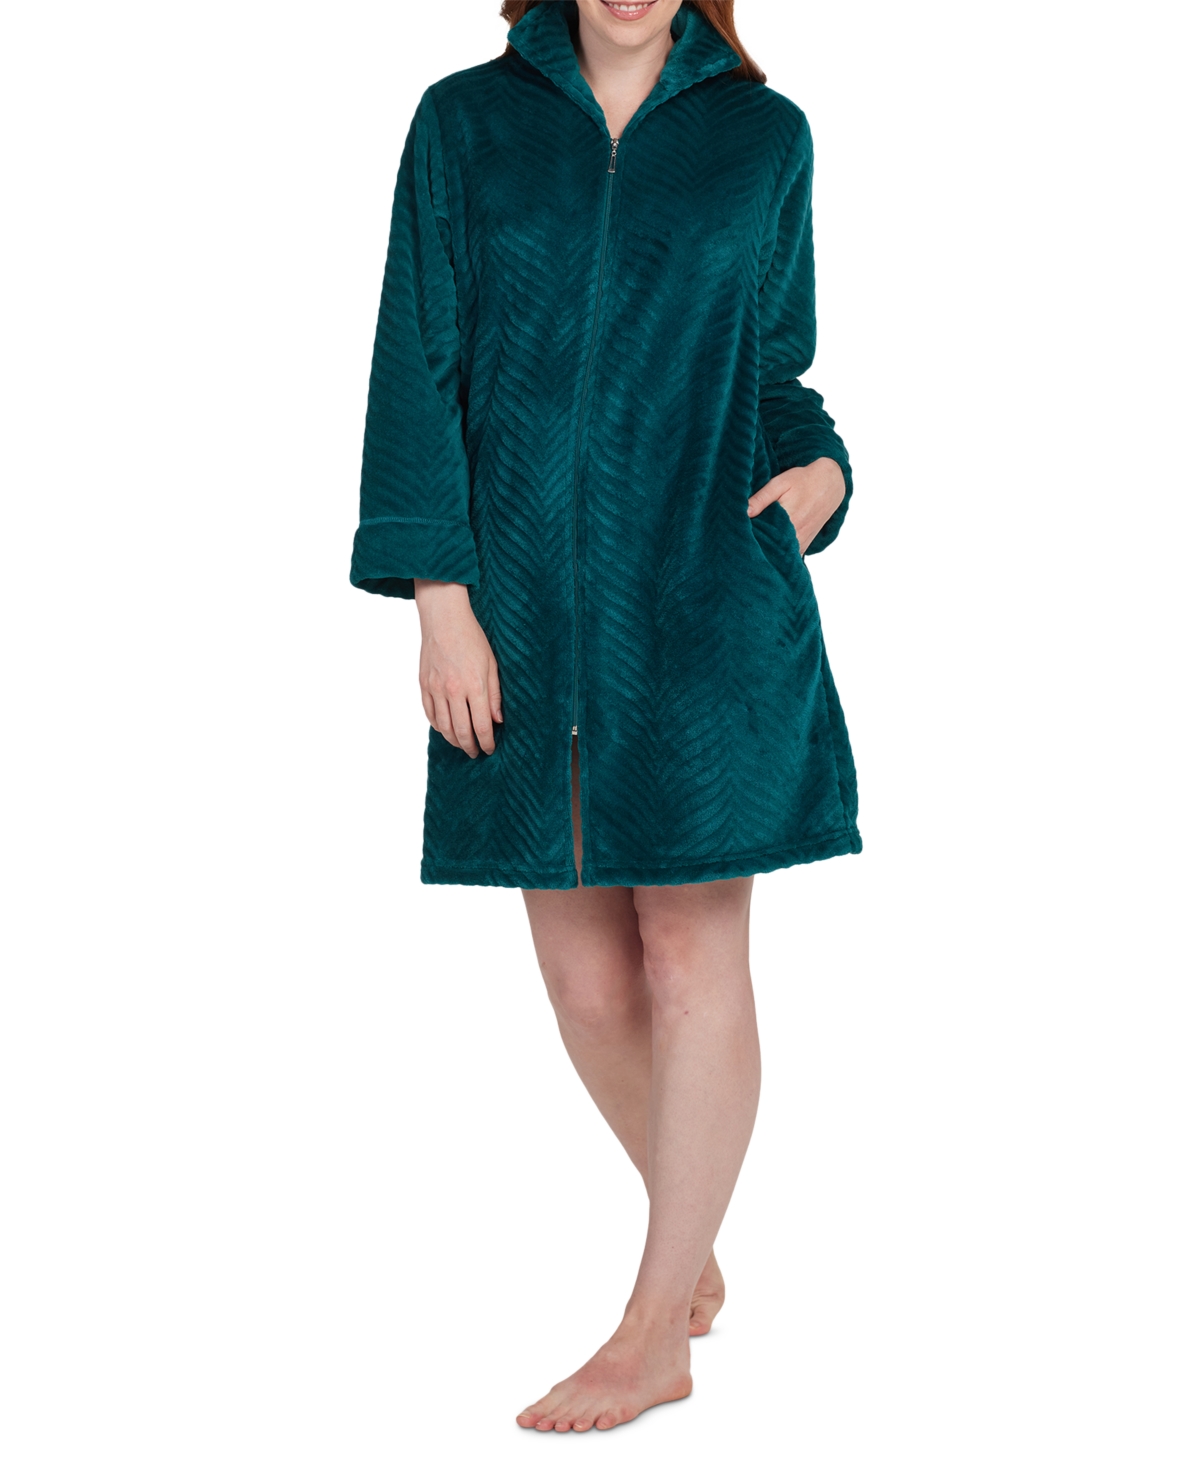 Women's Solid Long-Sleeve Short Zip Fleece Robe - Emerald